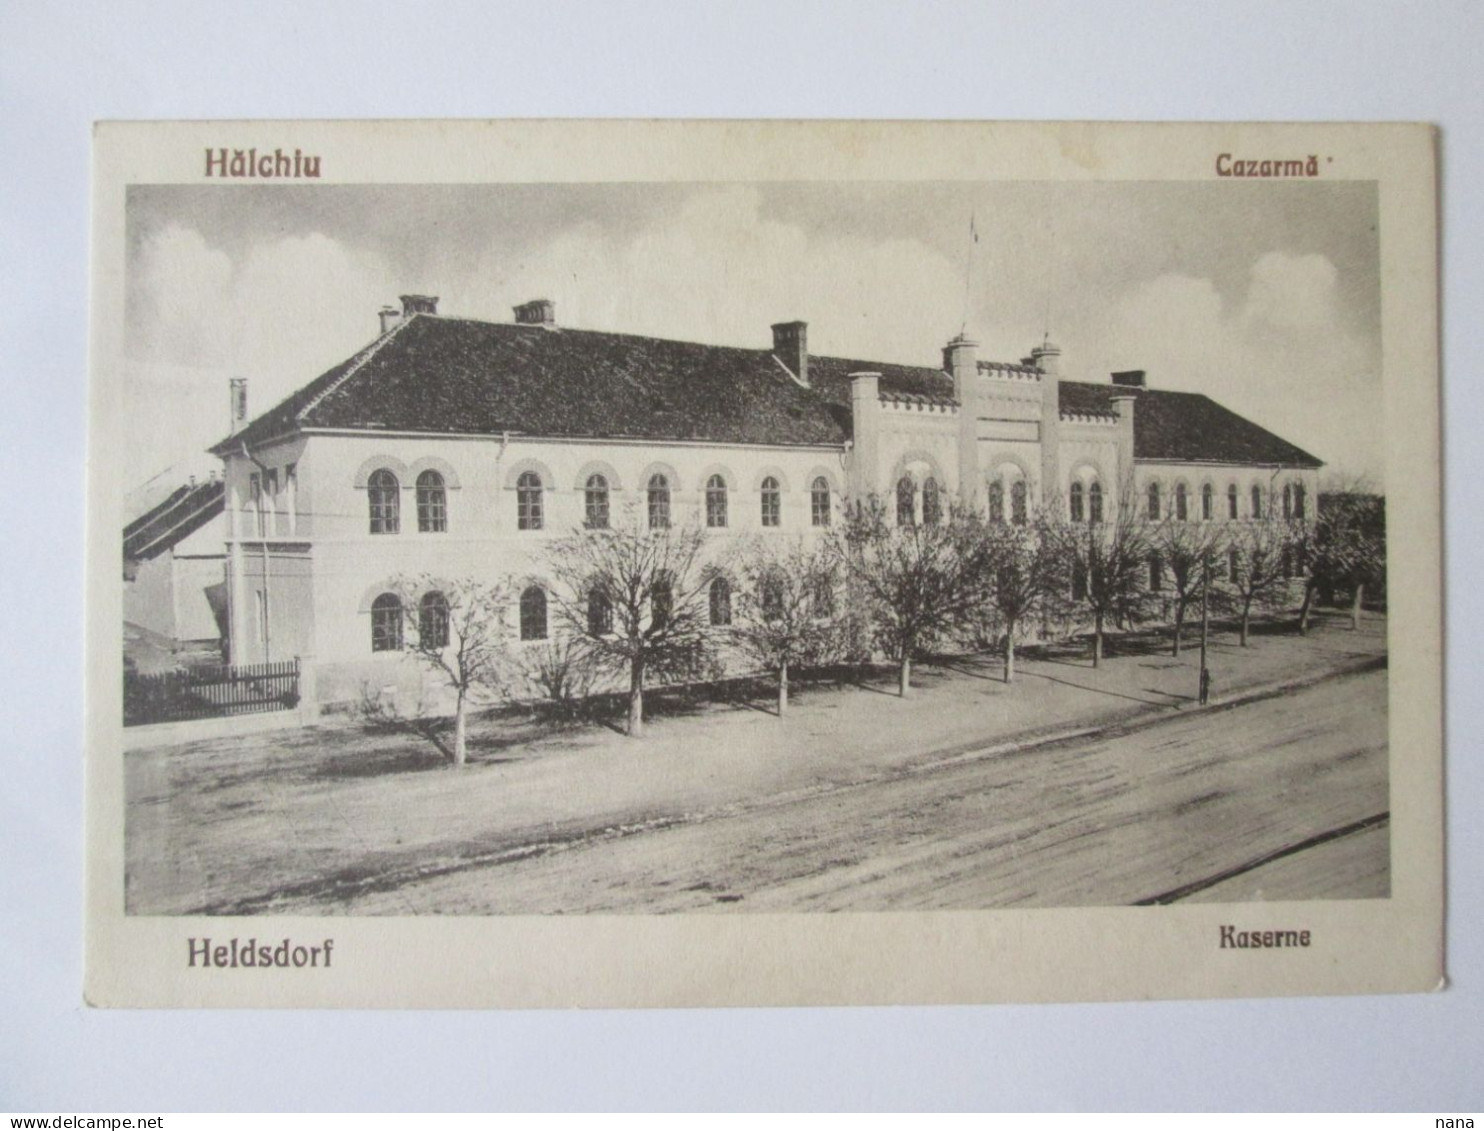 Romania-Hălchiu(Brașov):Cazarmă/Barracks Unused Postcard About 1920 - Romania